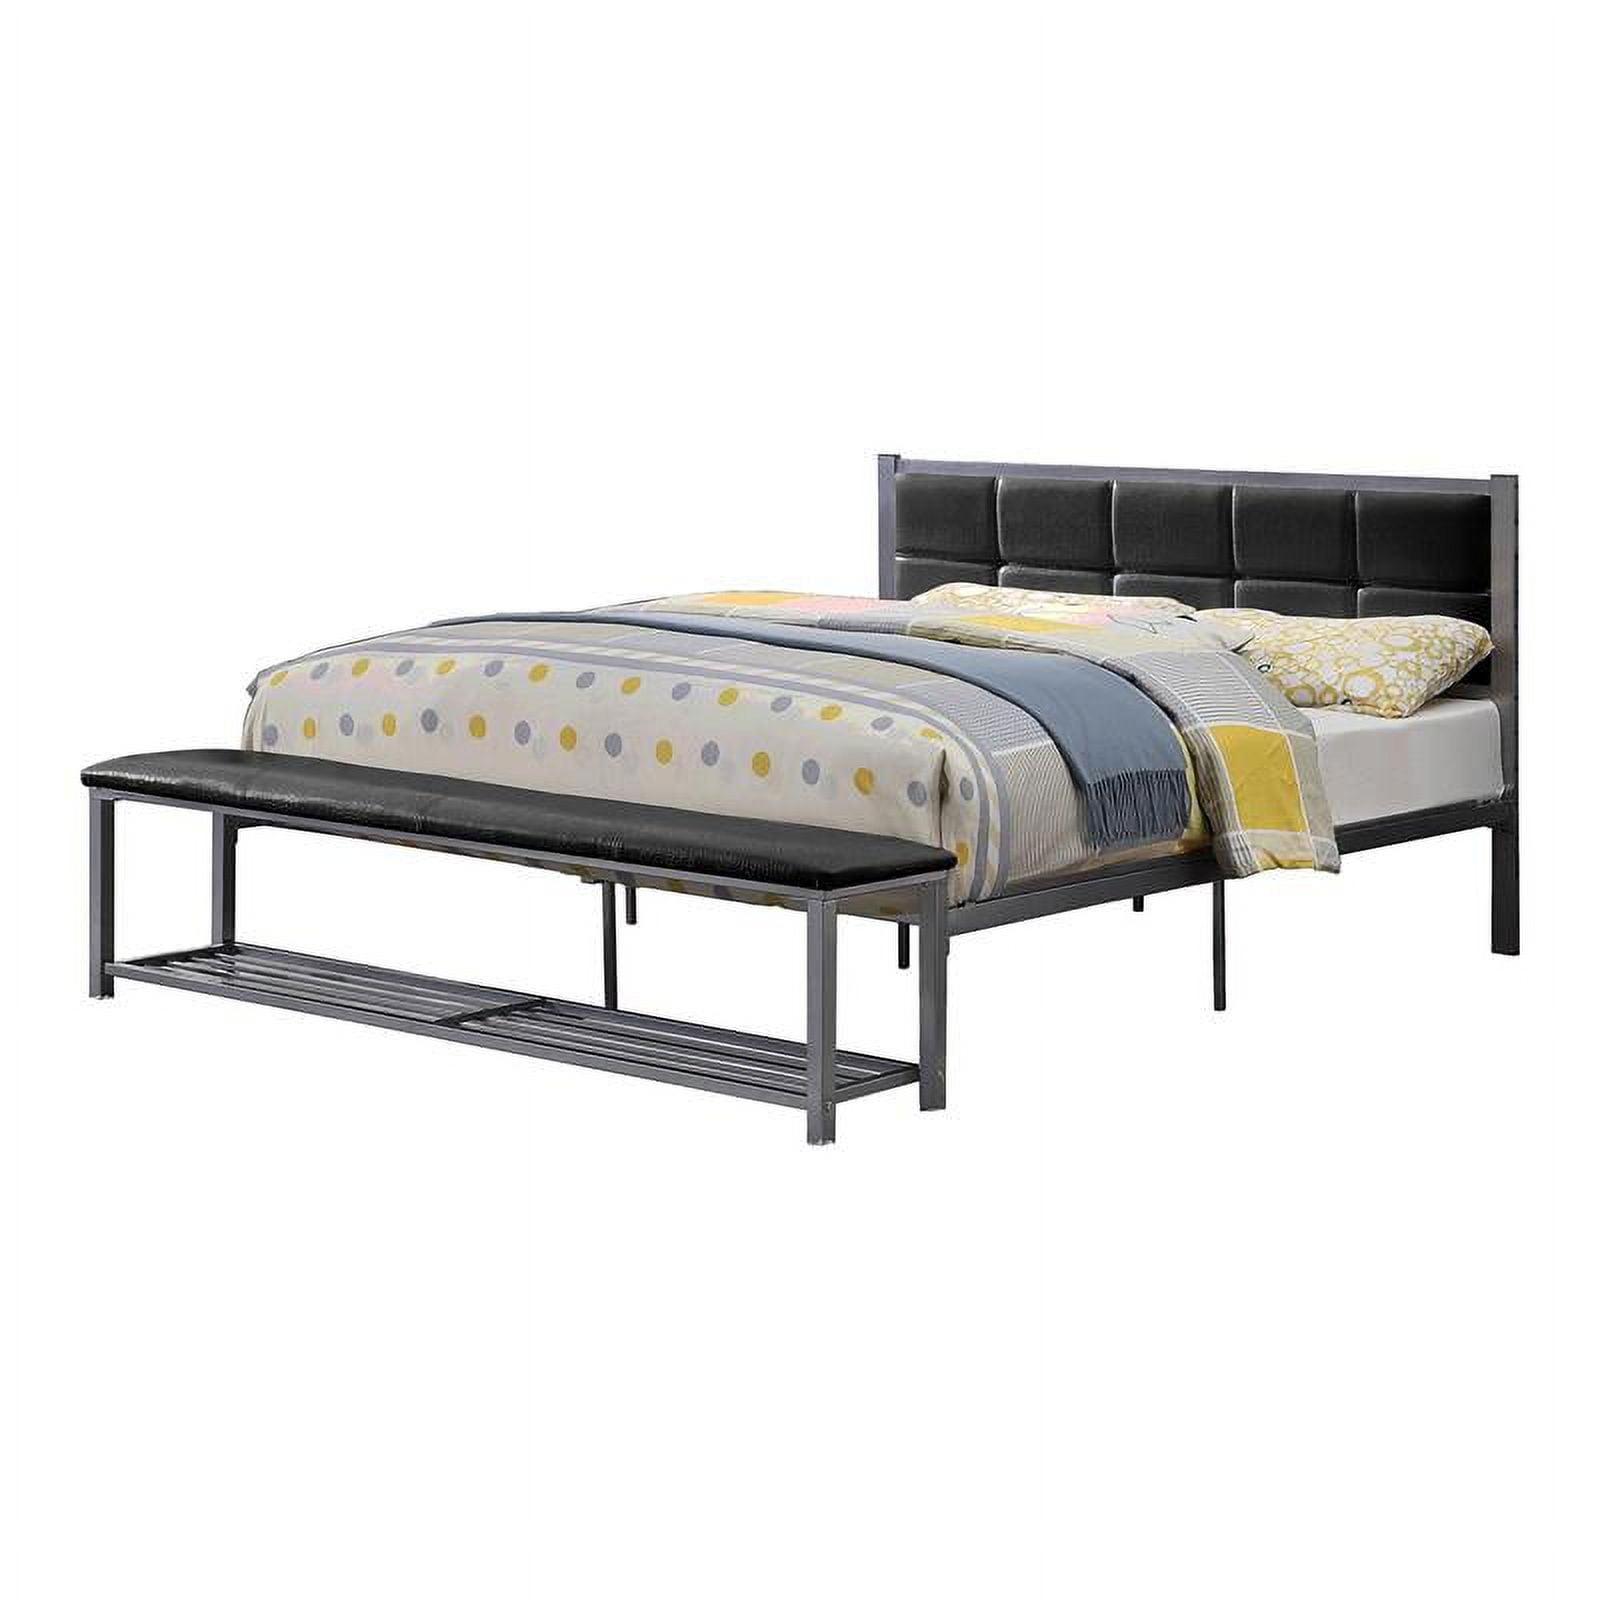 Arabel Queen Upholstered Platform Bed with Storage in Dark Metal